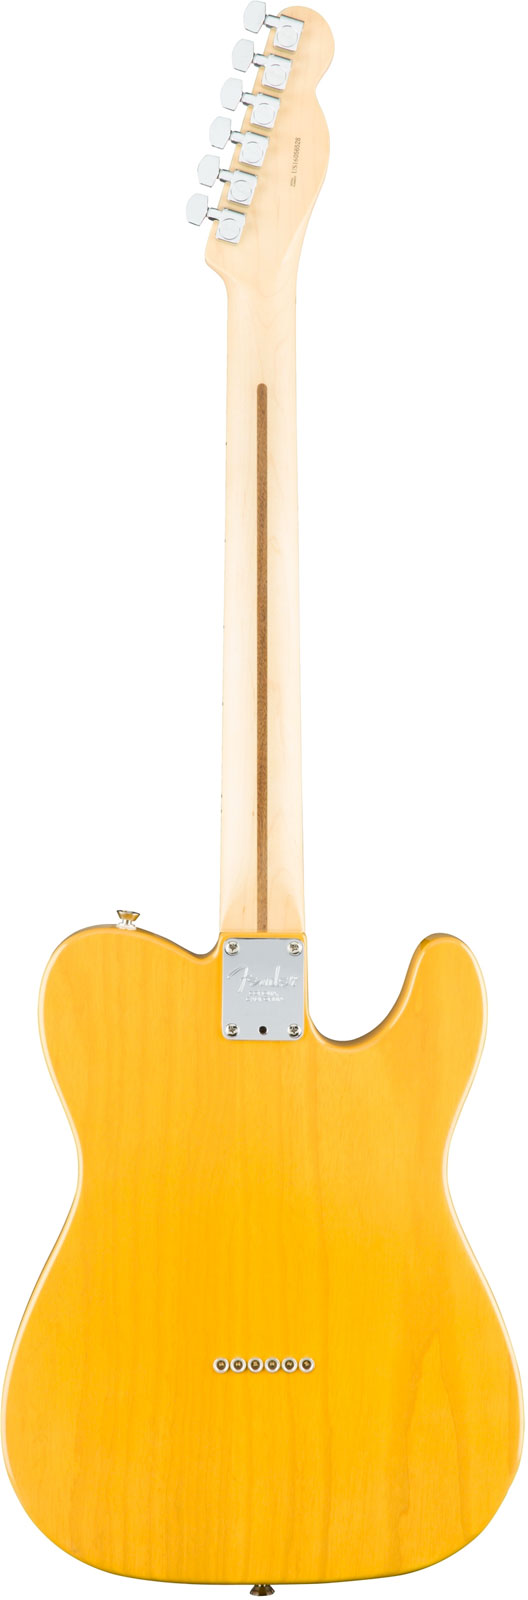 Fender Tele American Professional Lh Usa Gaucher 2s Mn - Butterscotch Blonde - Guitarra electrica para zurdos - Variation 2